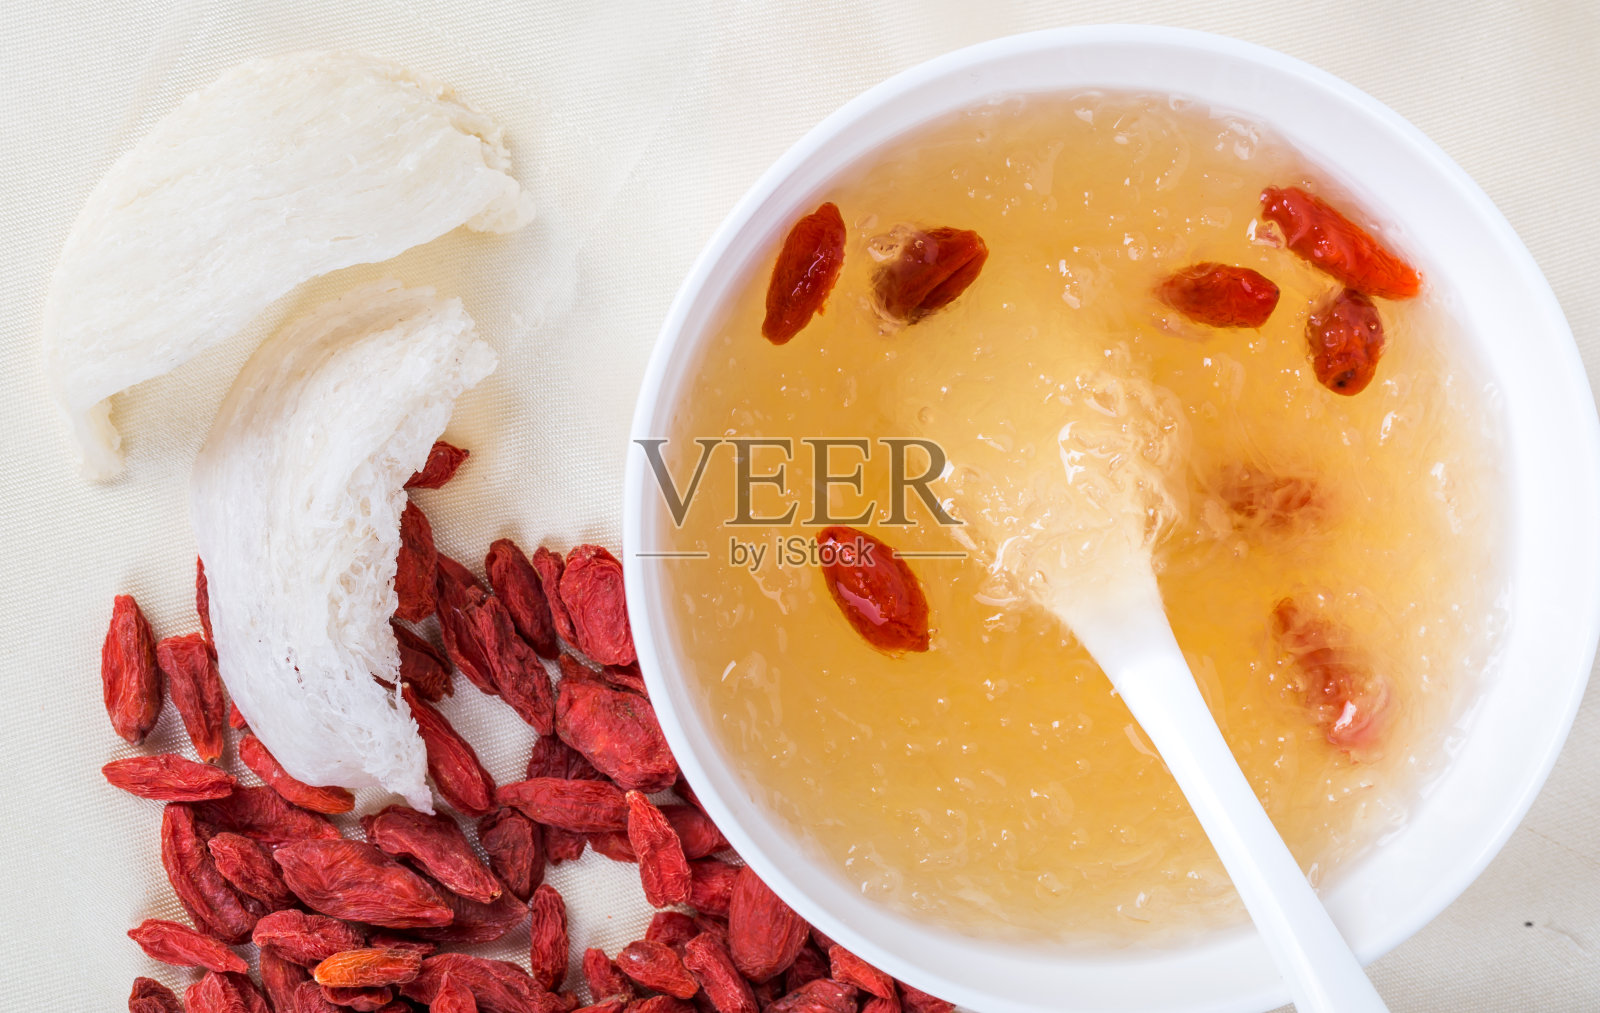 可食燕窝、枸杞、枣。燕窝汤，中国传统食物照片摄影图片